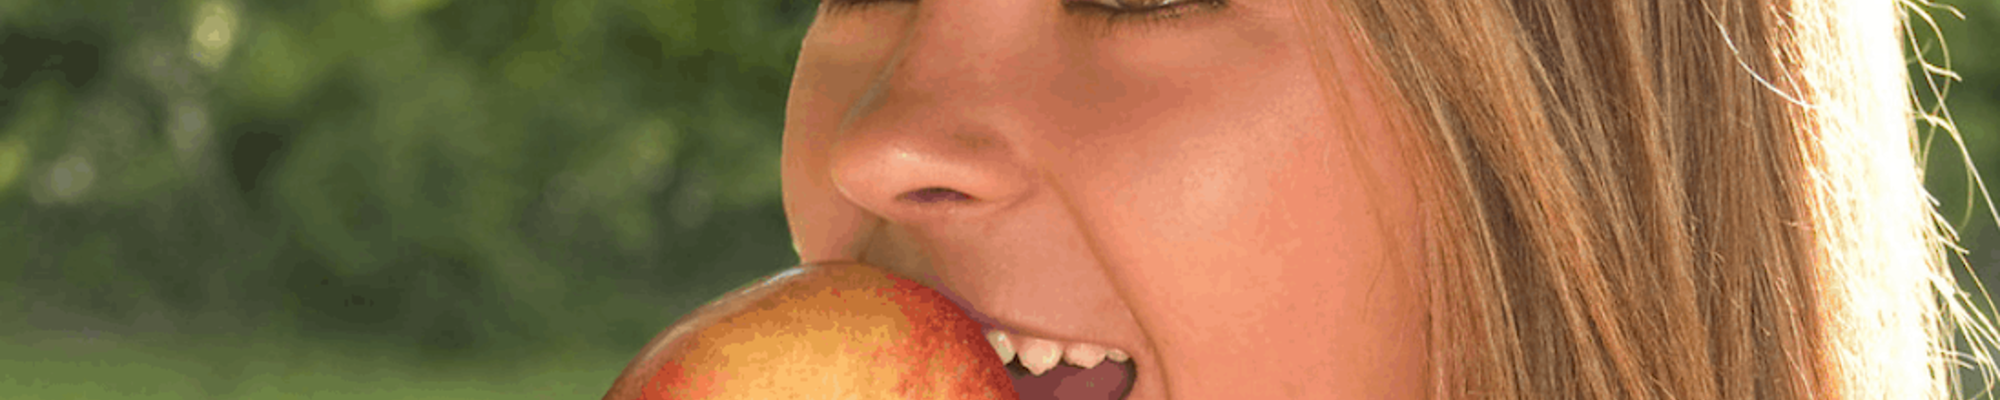 Ovocie má výrazný vplyv aj na sýtosť. Kedy sa ho oplatí konzumovať?